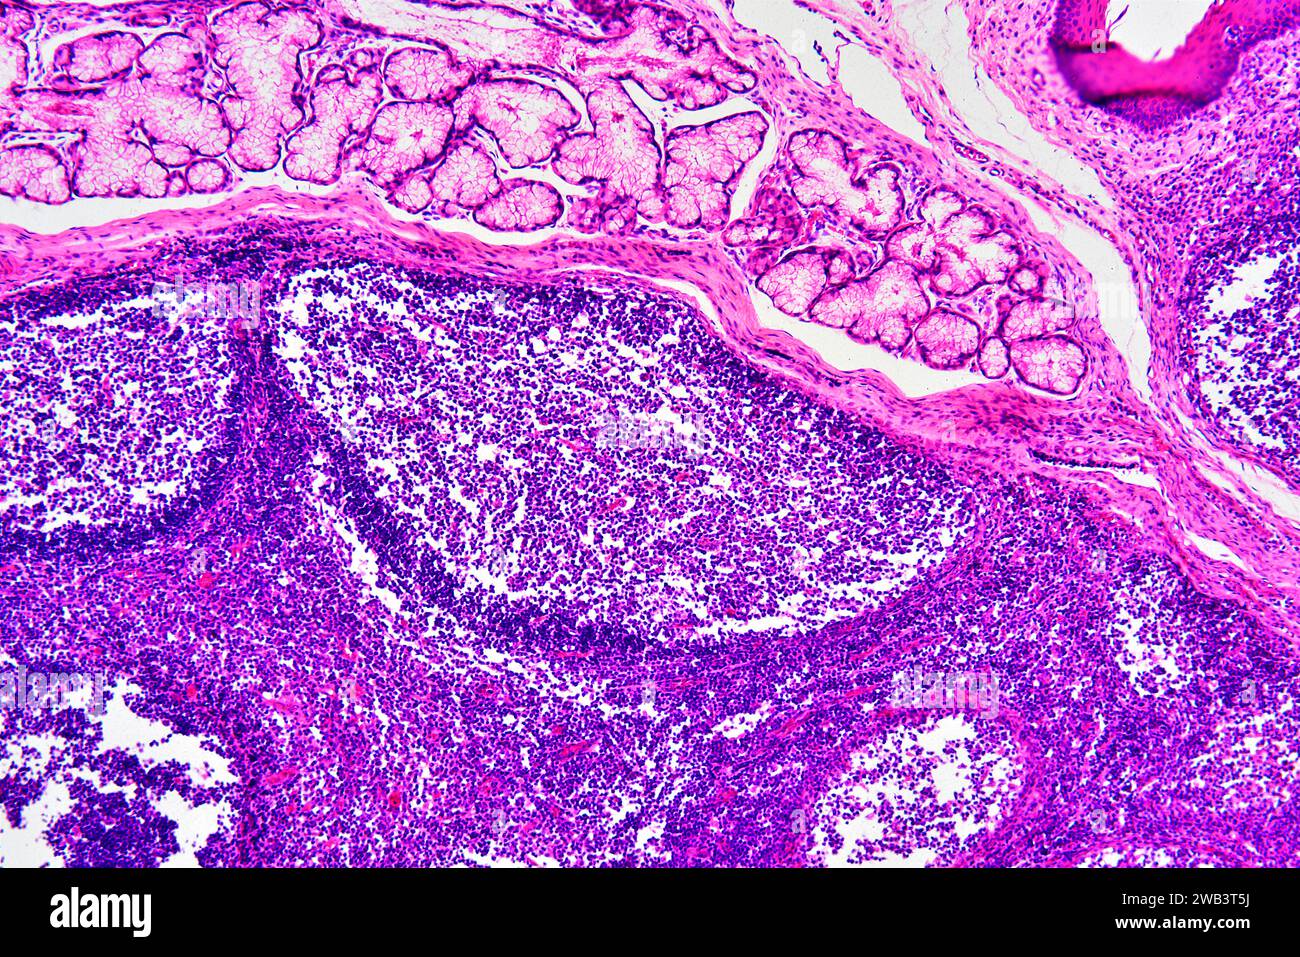 Sección de amígdalas palatinas humanas que muestra folículos linfoides circulares y glándula secretora. Micrografía de luz, tinción de eosina hematoxilina. X75 cuando se imprime 10 Foto de stock